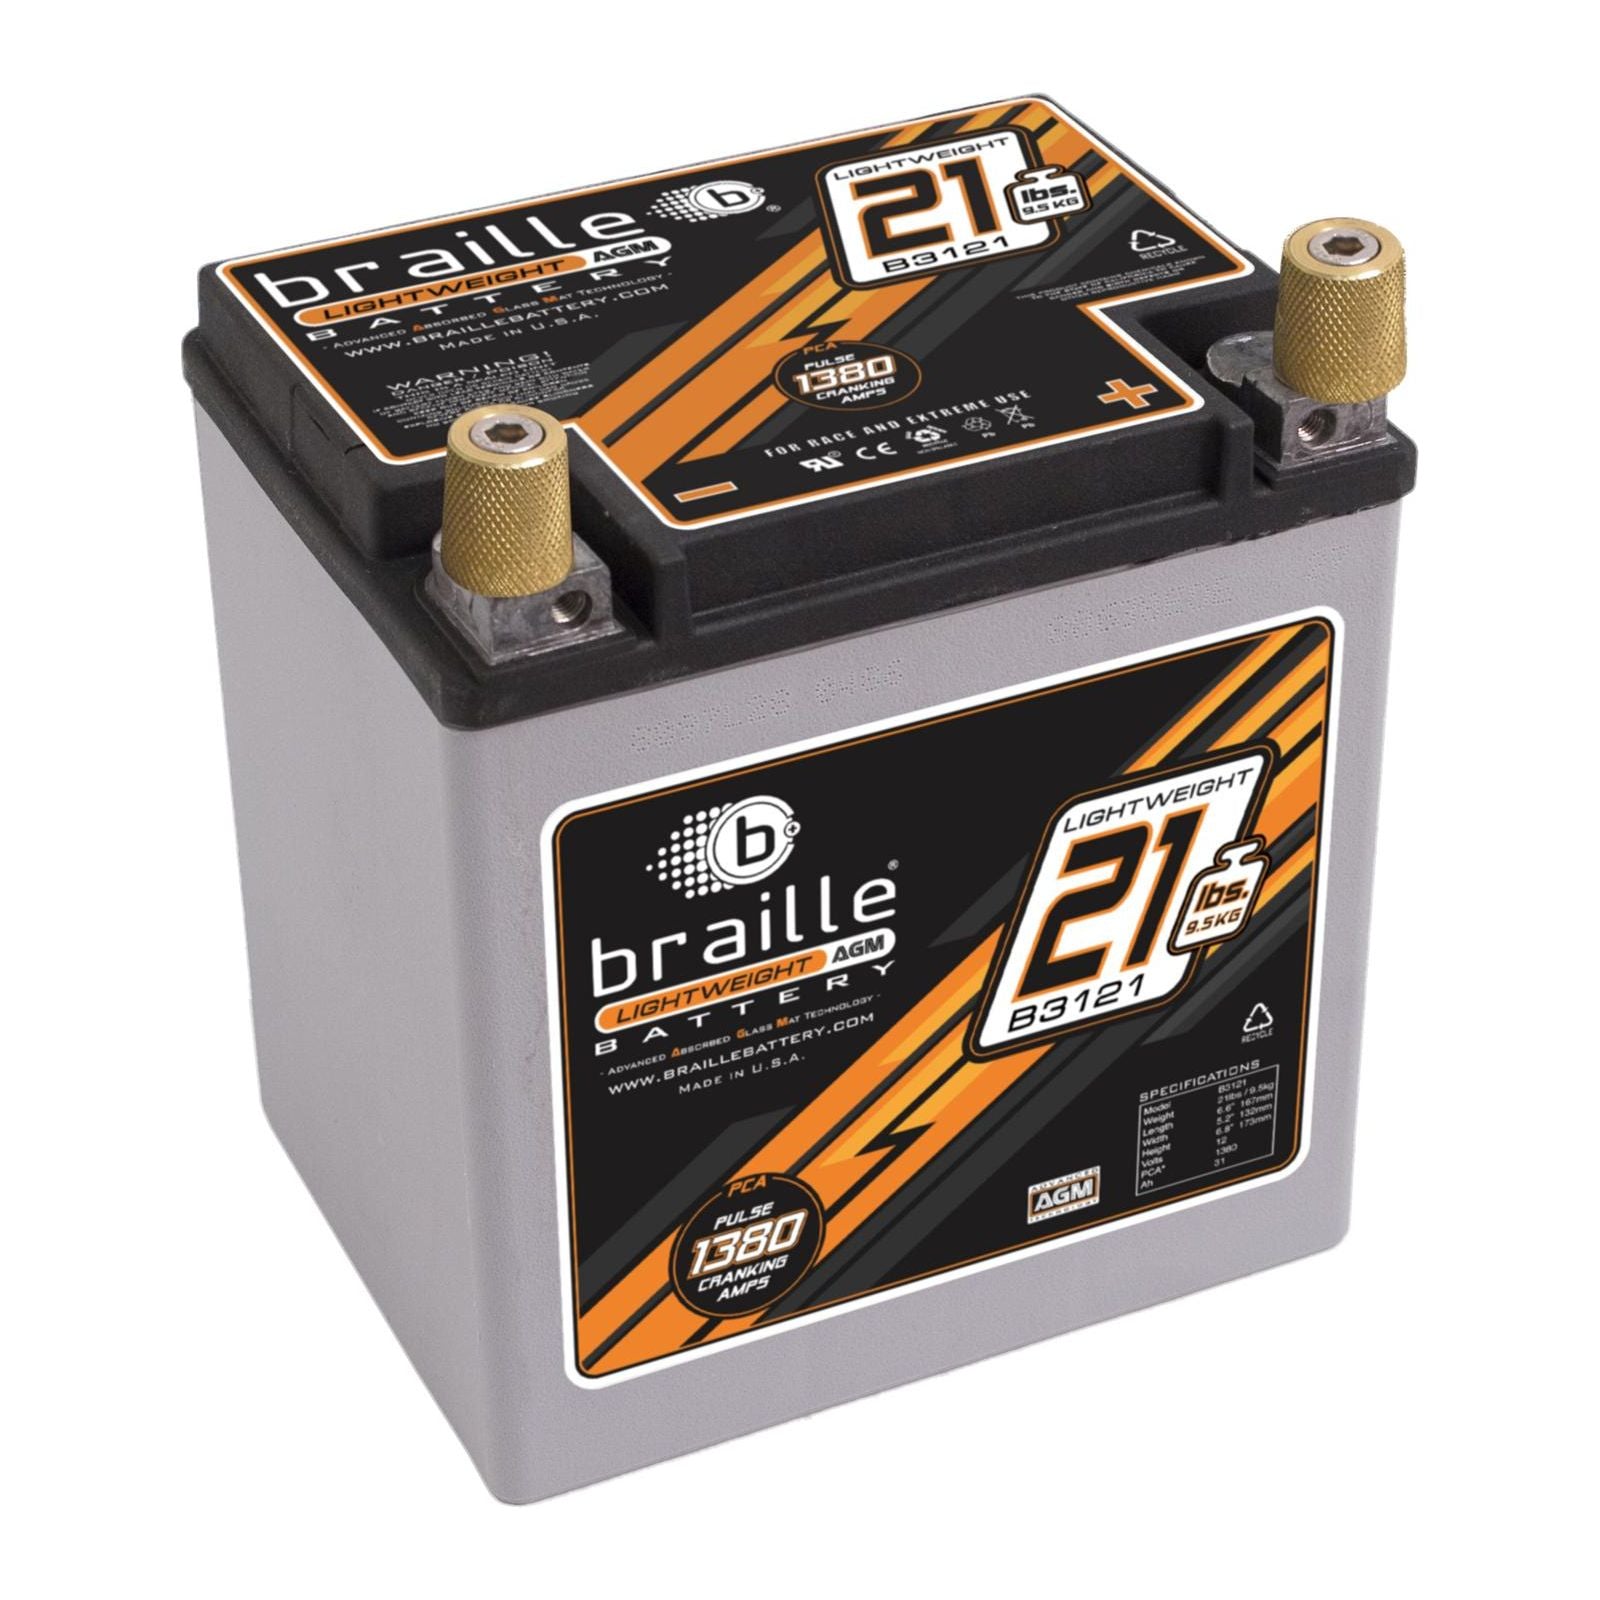 Braille Battery No-Weight Standard Batteries B3121